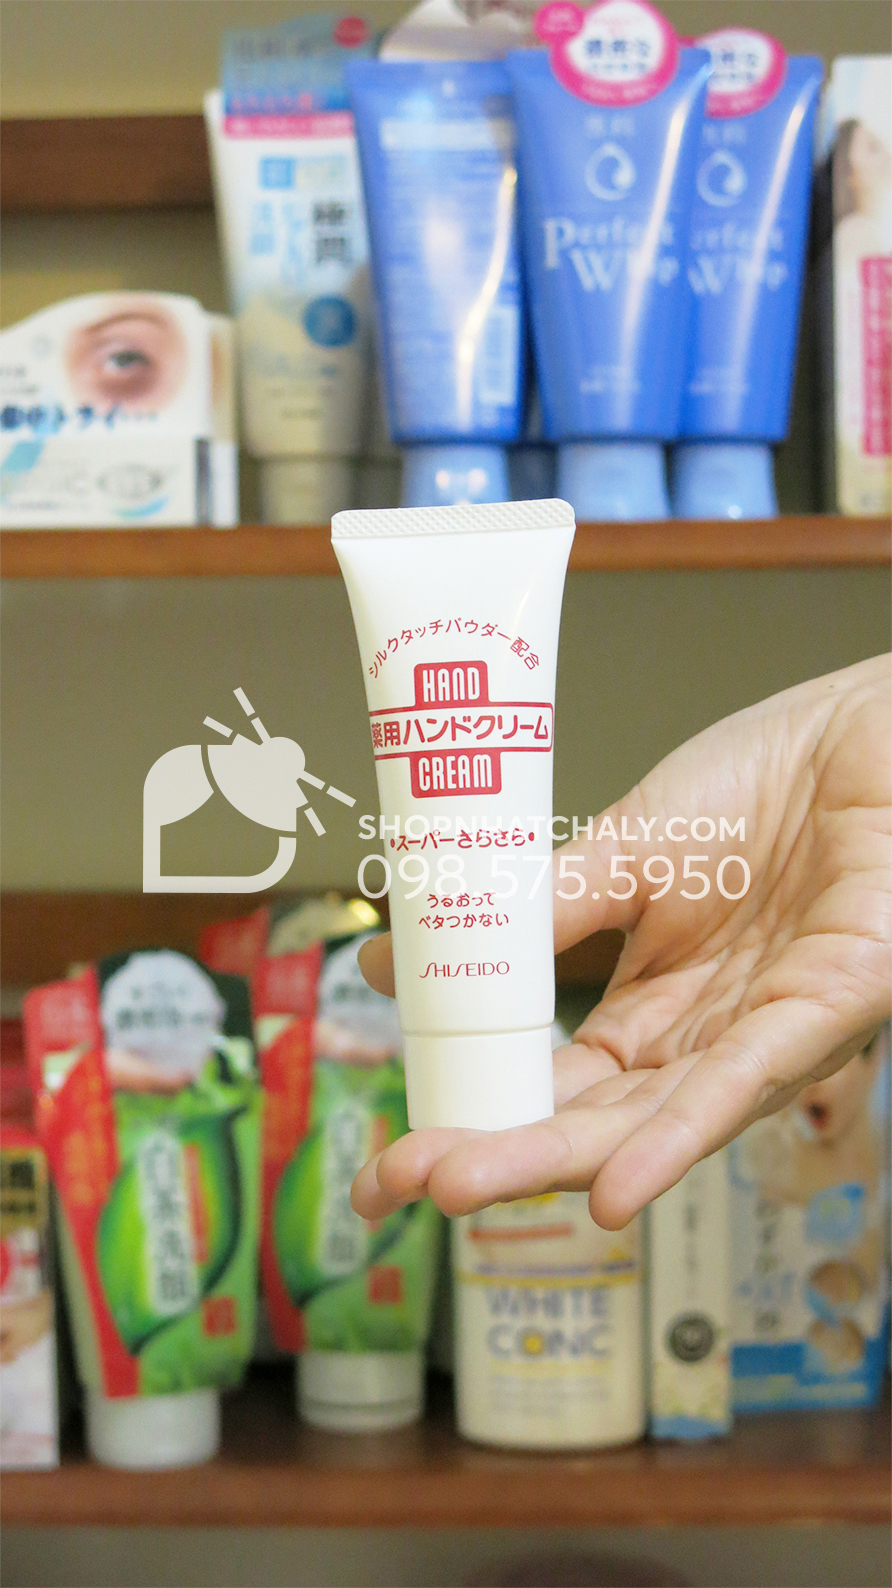 Tuýp kem dưỡng tay của Nhật Shiseido hand cream đặc biệt được yêu thích bởi texture lỏng mượt tan ngay trên da khi thoa, phù hợp với cả da dầu, ghét sự nhờn dính